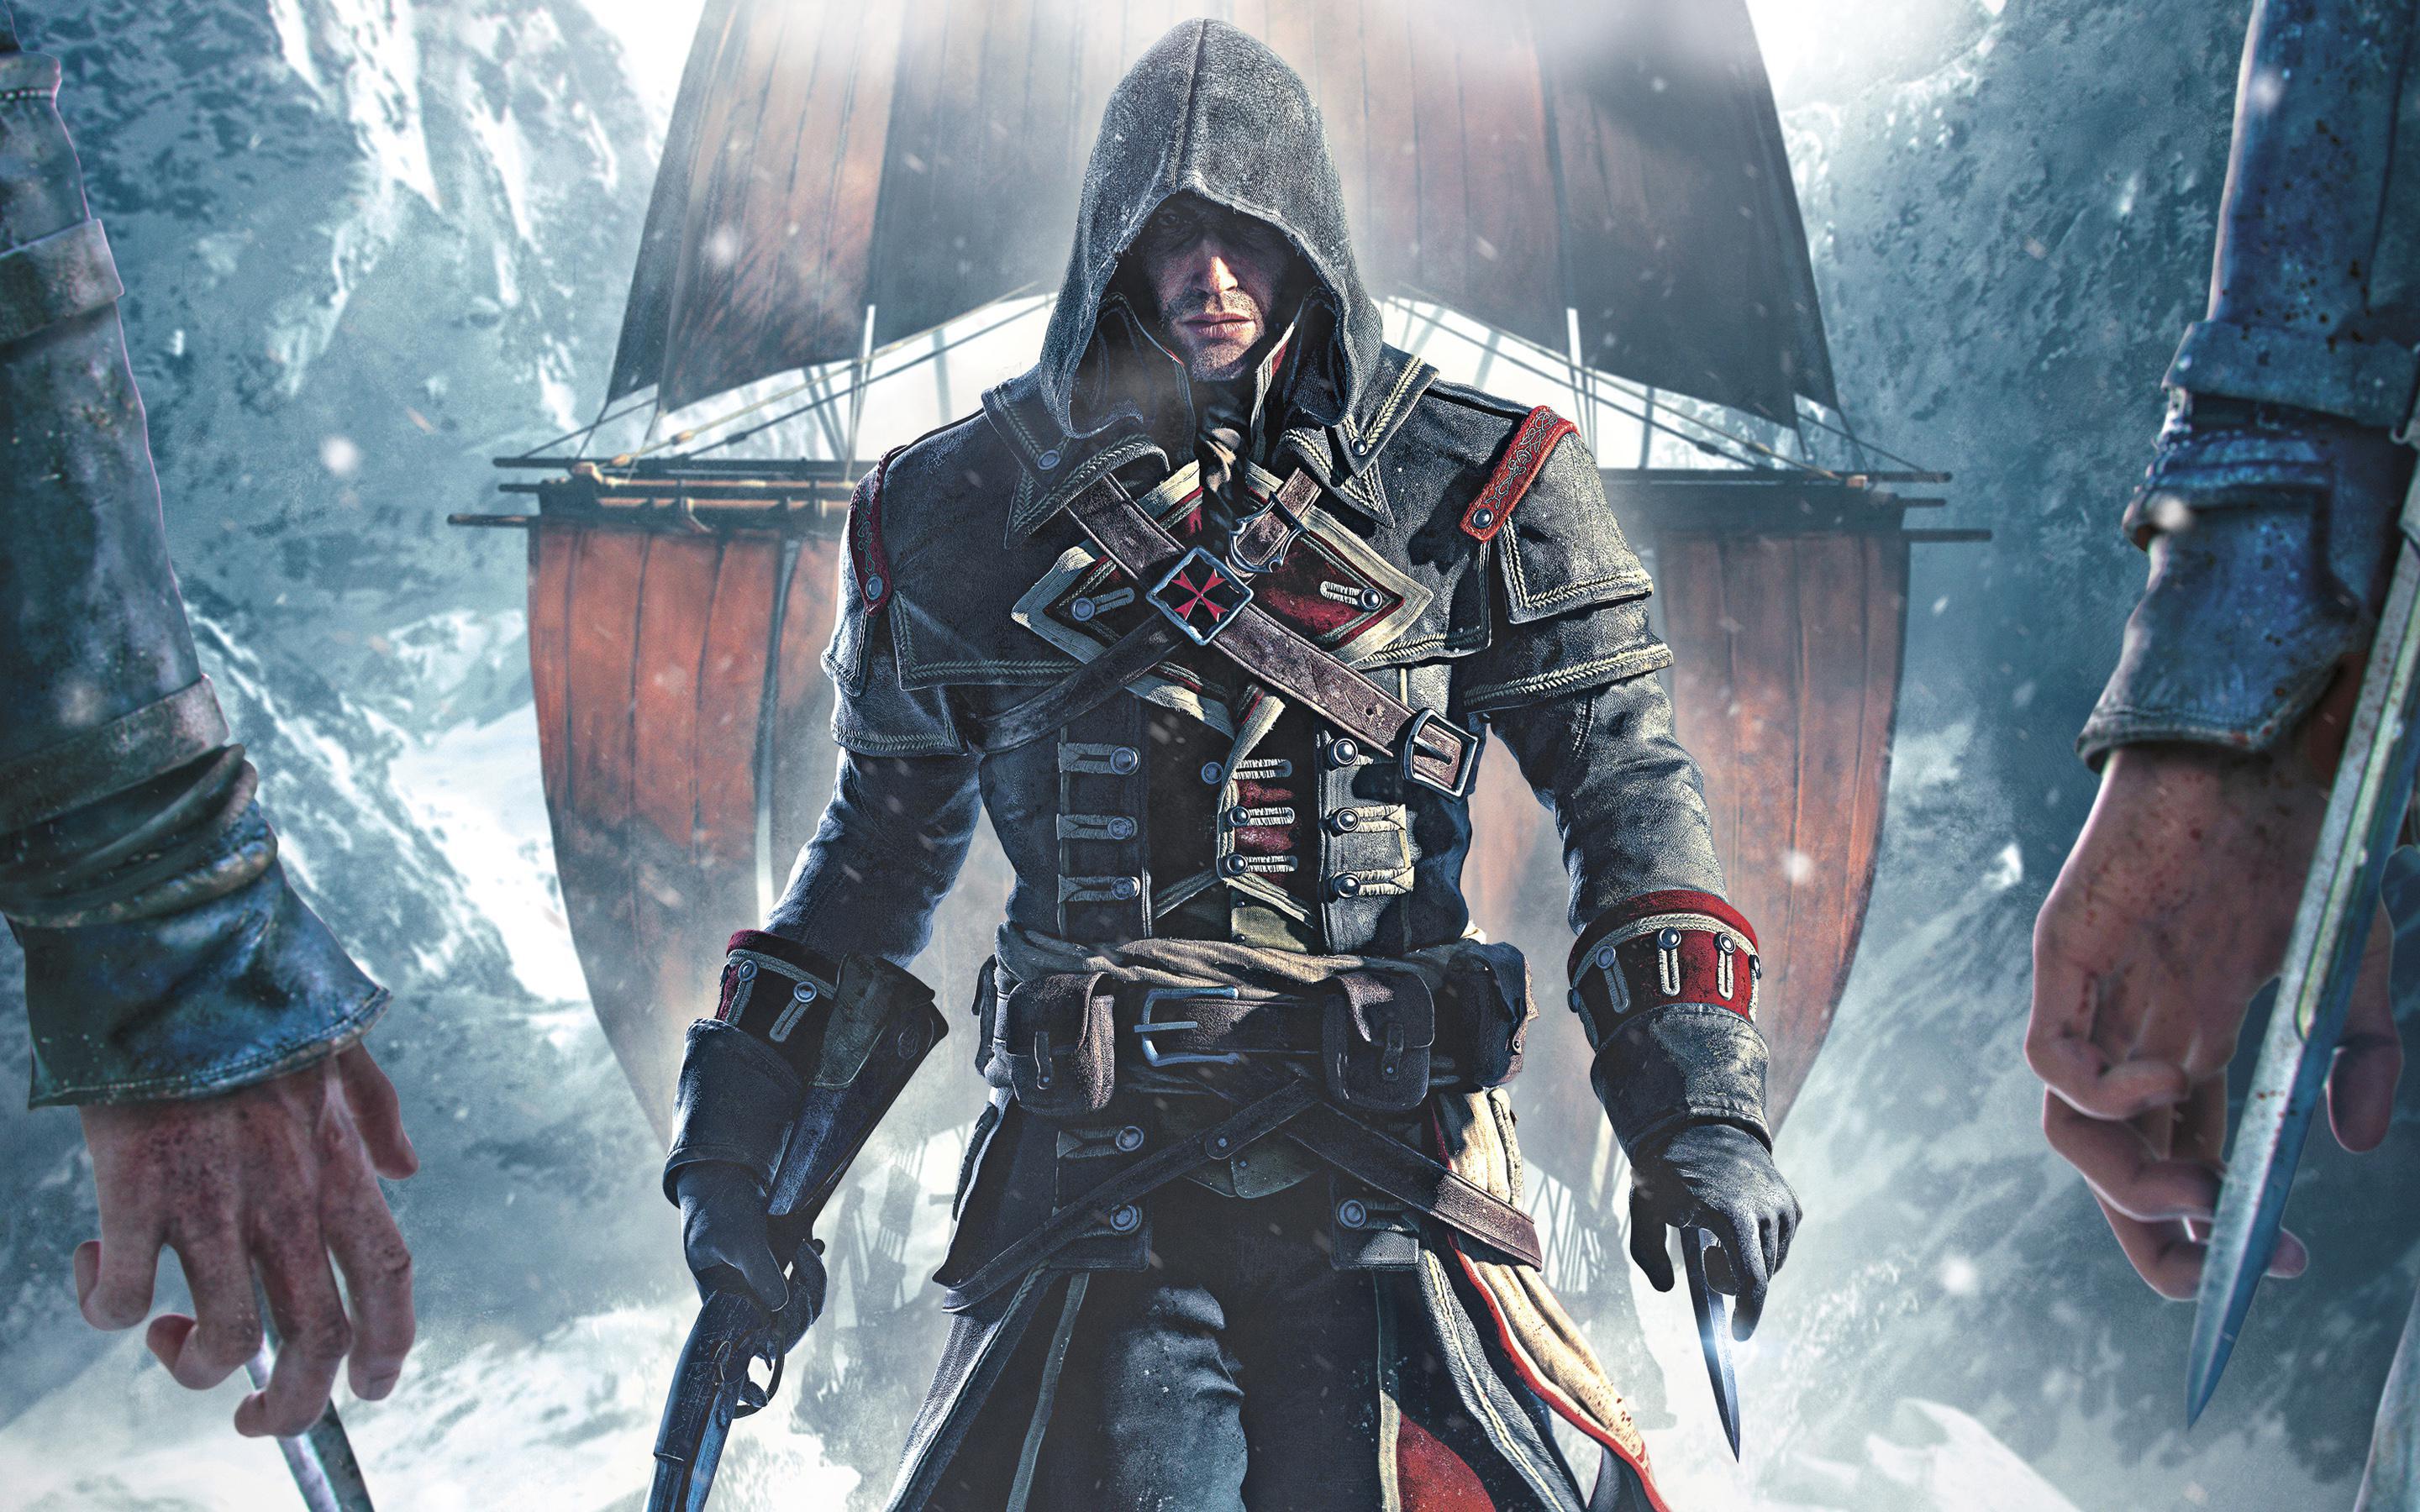 Listado el lanzamiento de Assassin’s Creed Rogue HD para 2018 en PS4 y Xbox One